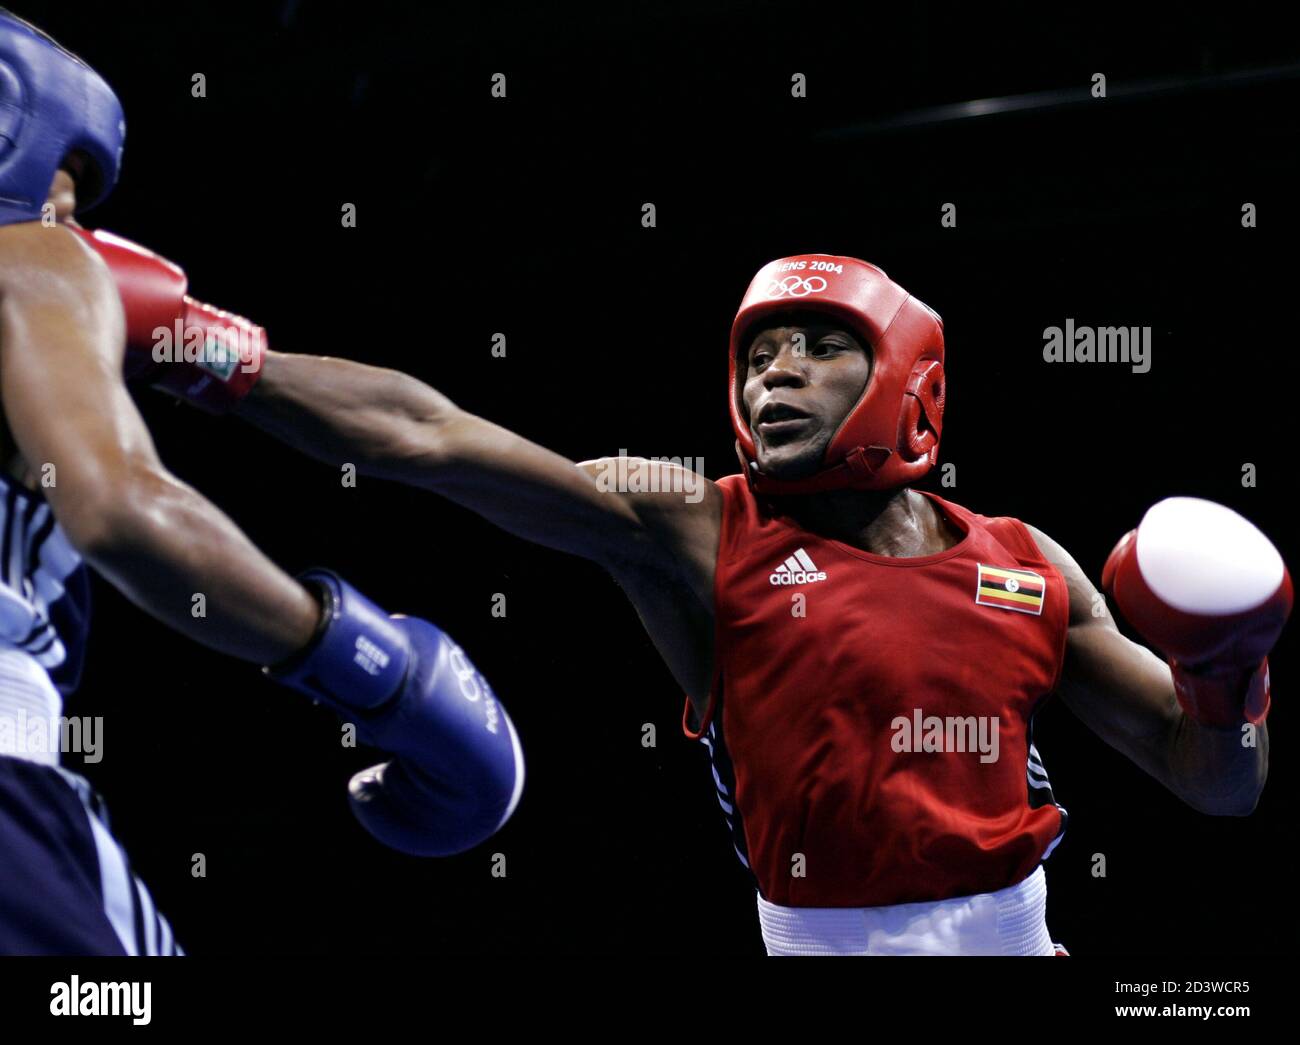 Ugandas Sam Rukundo (R) schlägt Puerto Rico Alexander de Jesus (L) in ihrem Leichtgewicht (60 kg) Runde von 16 Boxkampf bei den Athen 2004 Olympischen Sommerspielen, 20. August 2004. Rukundo gewann den Kampf. Stockfoto